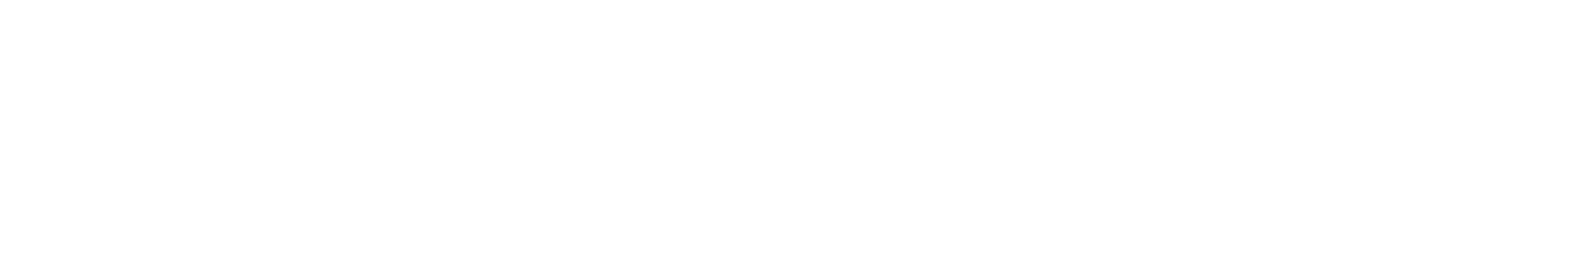 Jet2 logo large for dark backgrounds (transparent PNG)